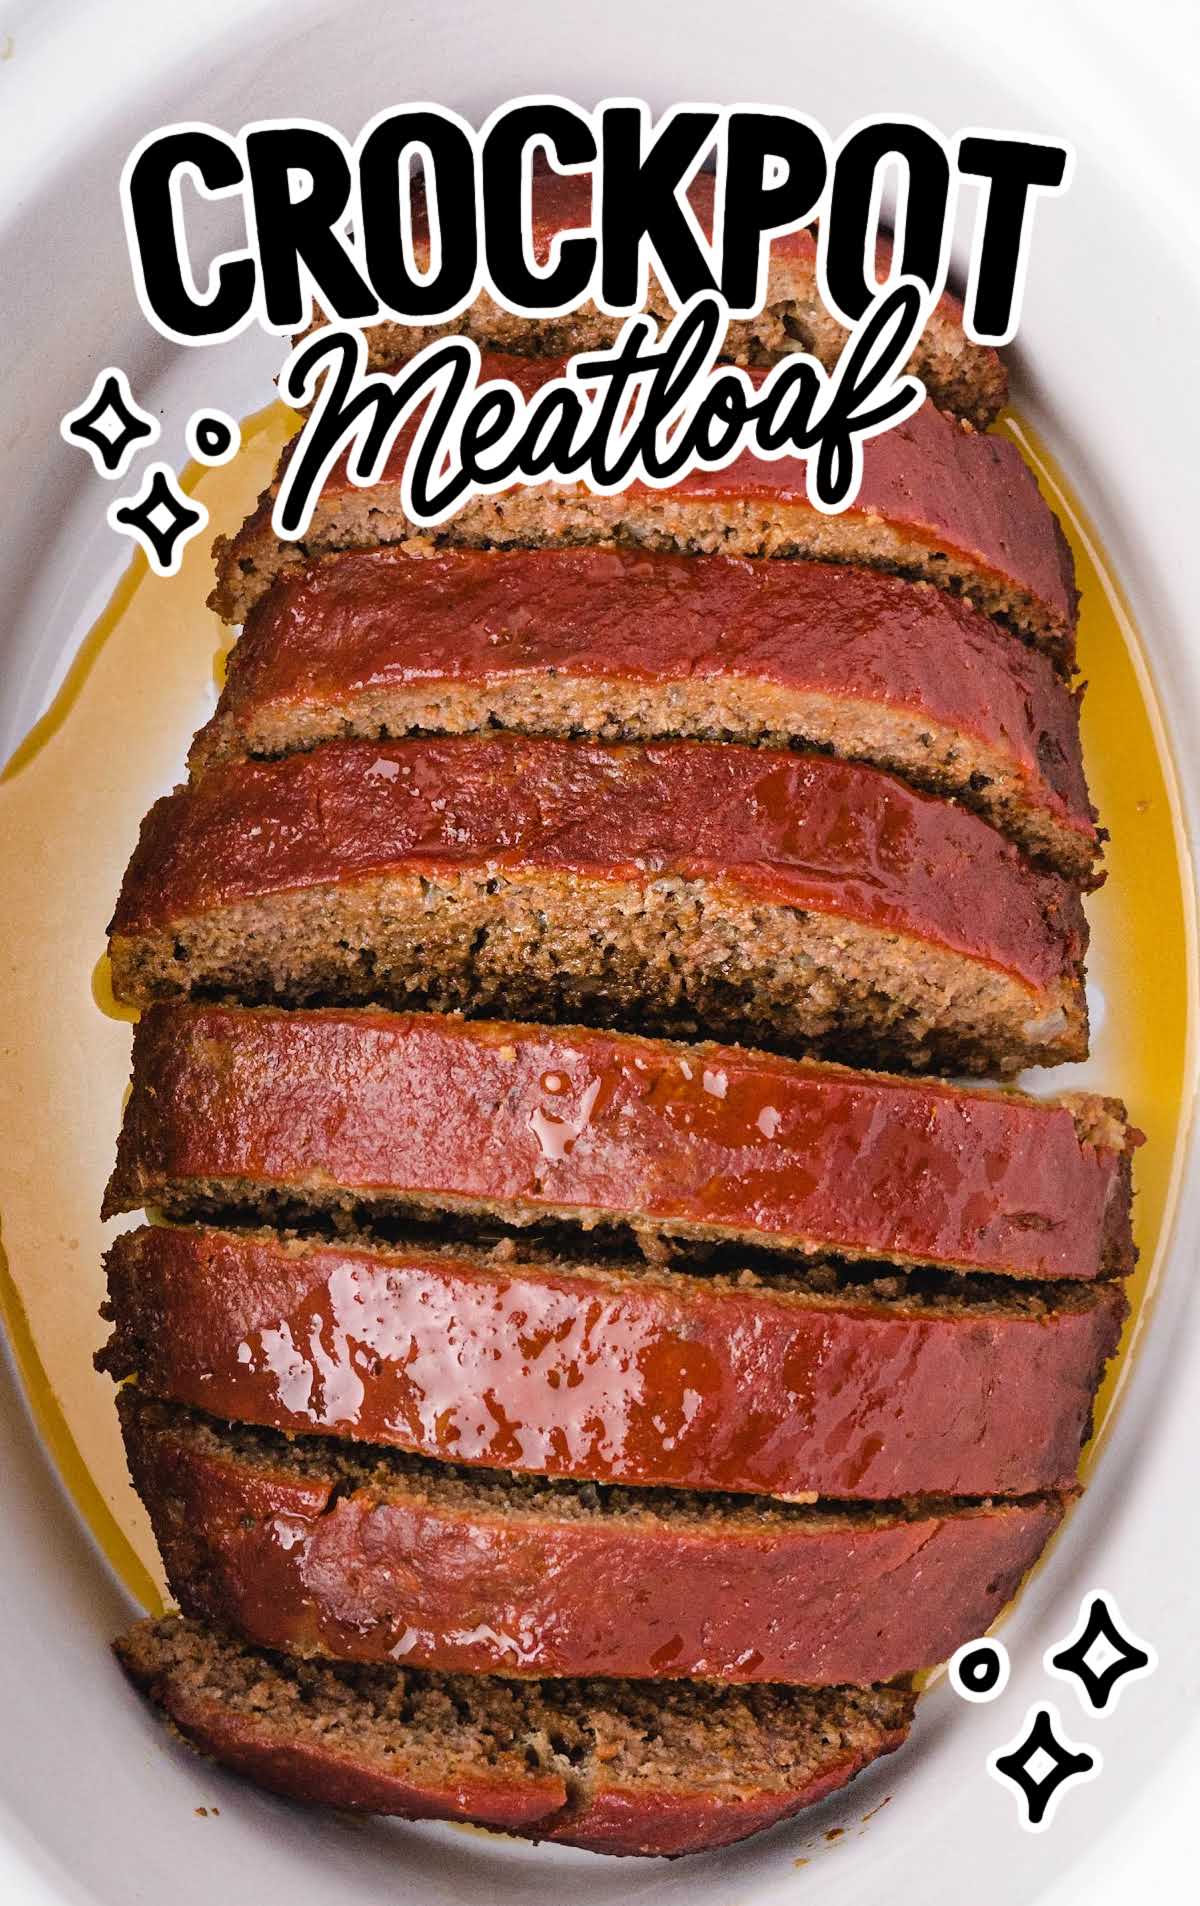 Meatloaf sliced in a crockpot